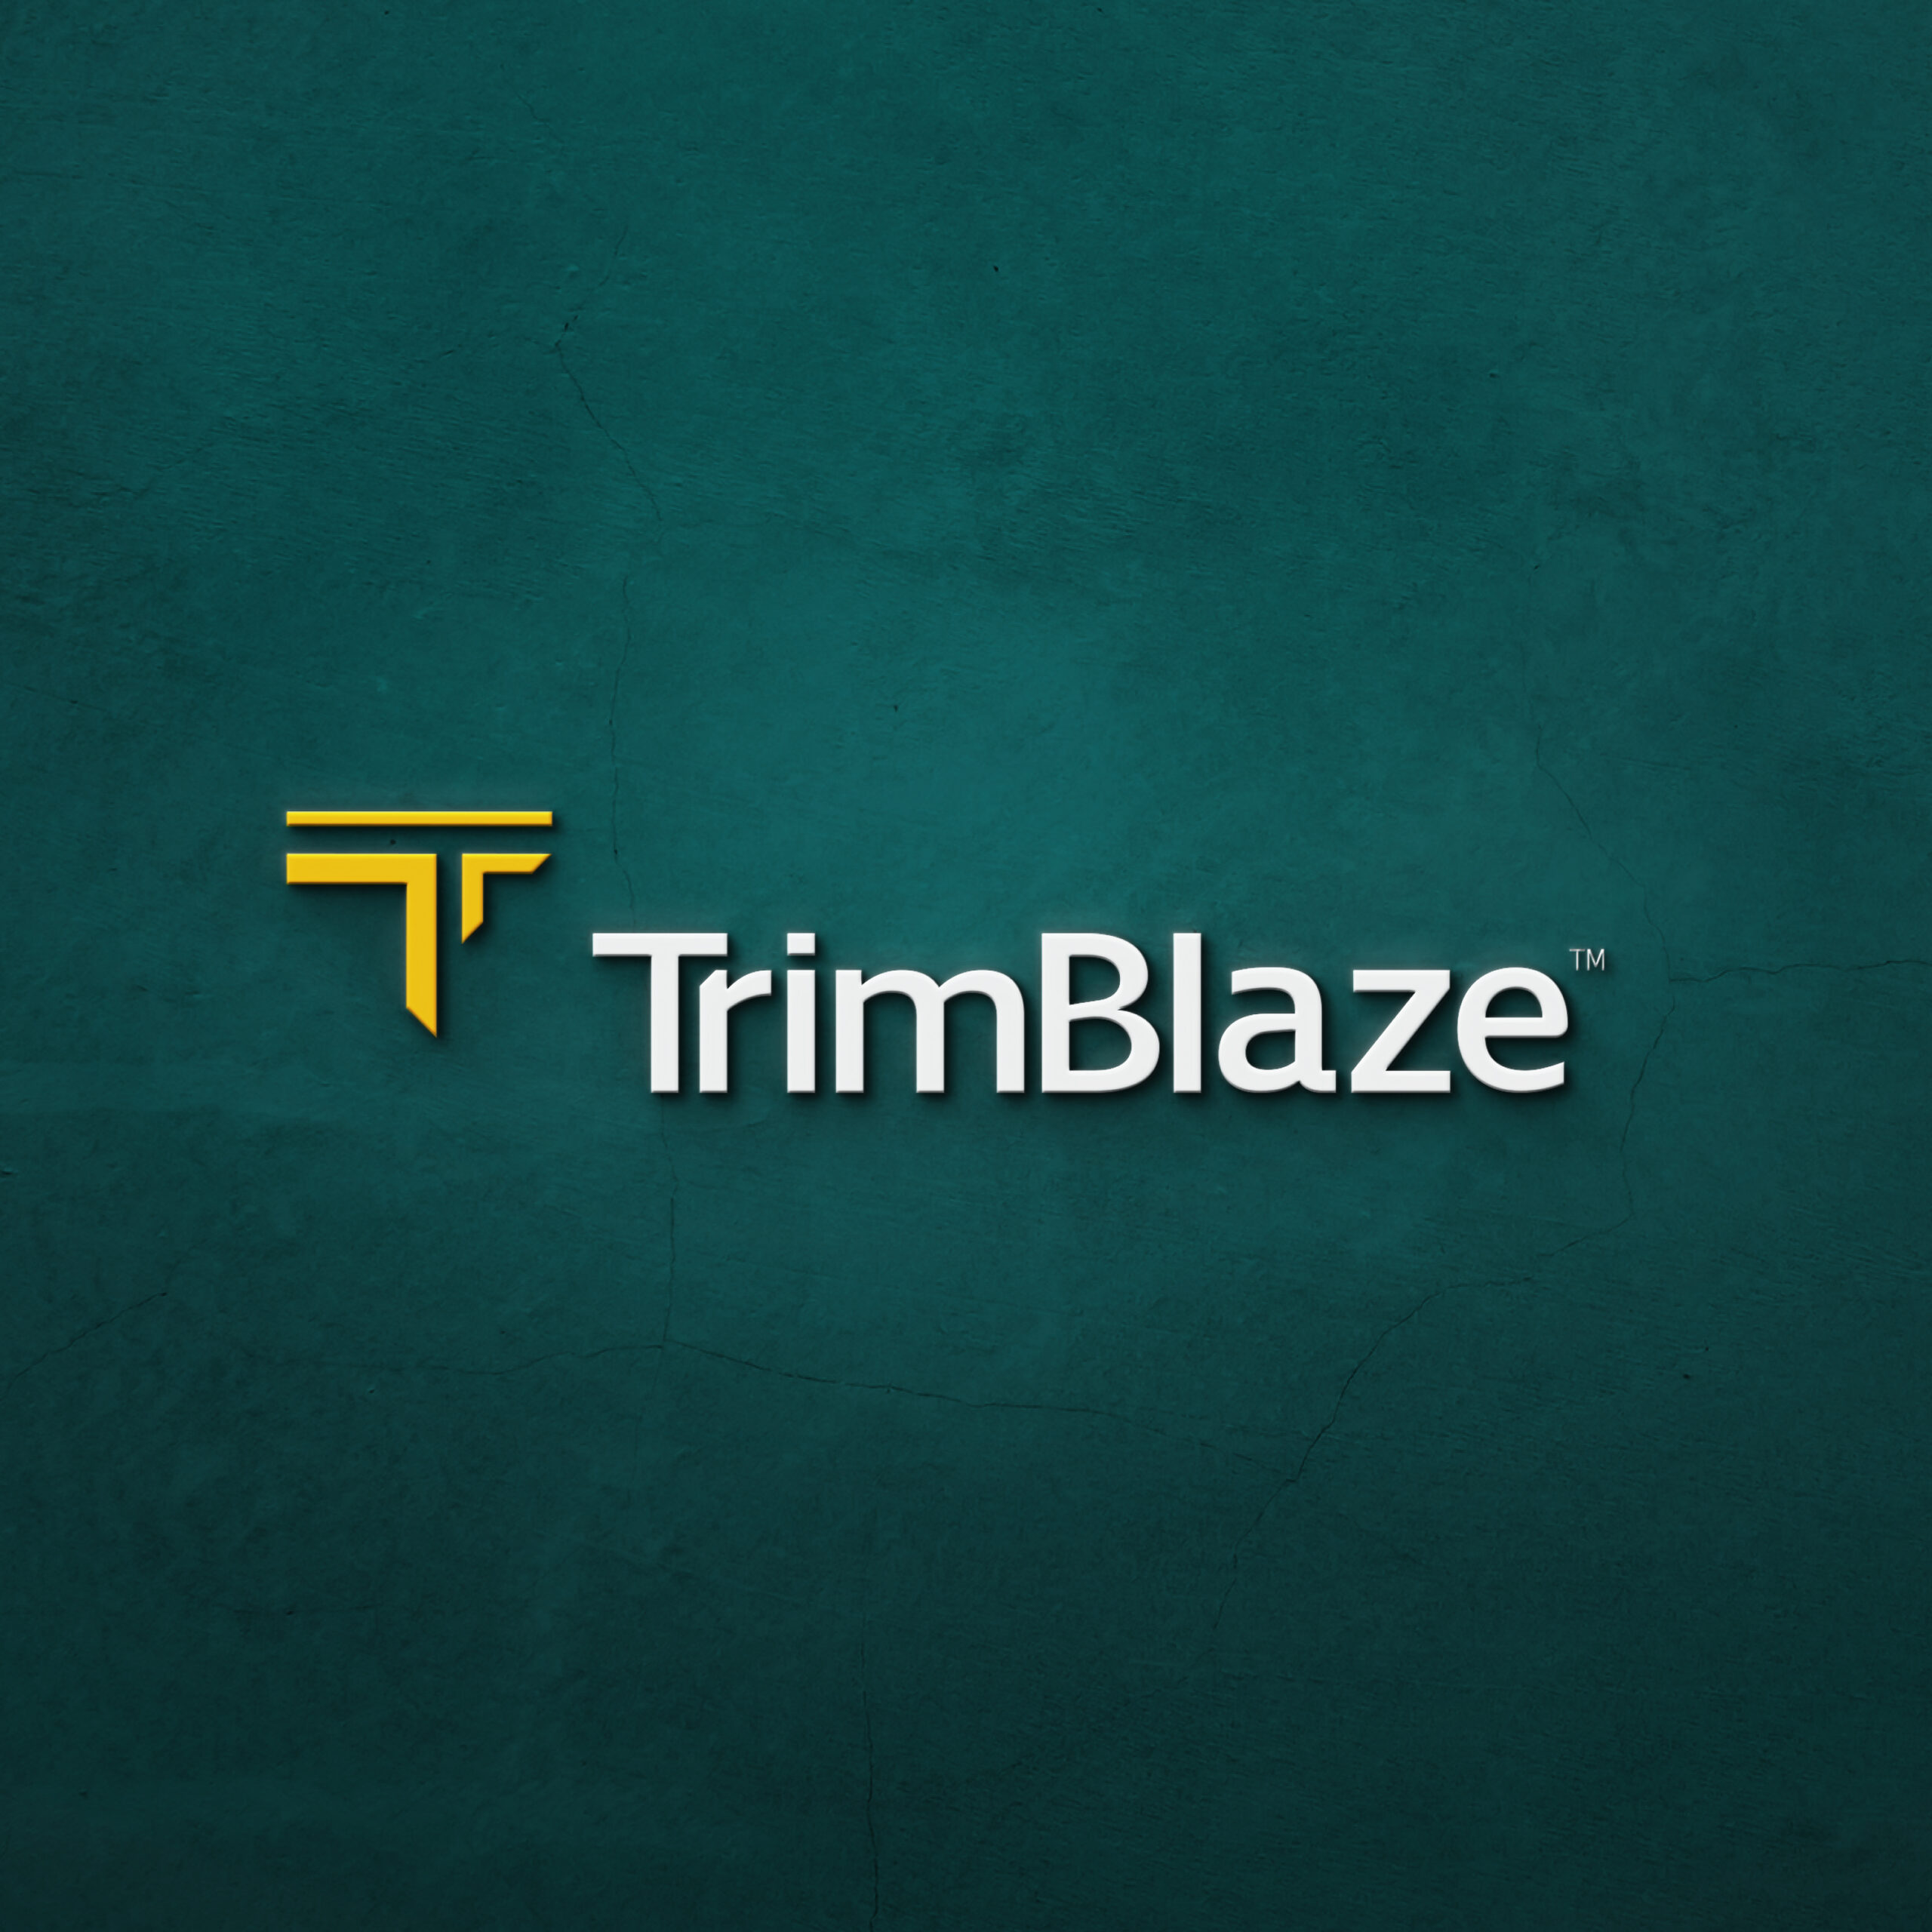 Trimblaze Rebrand